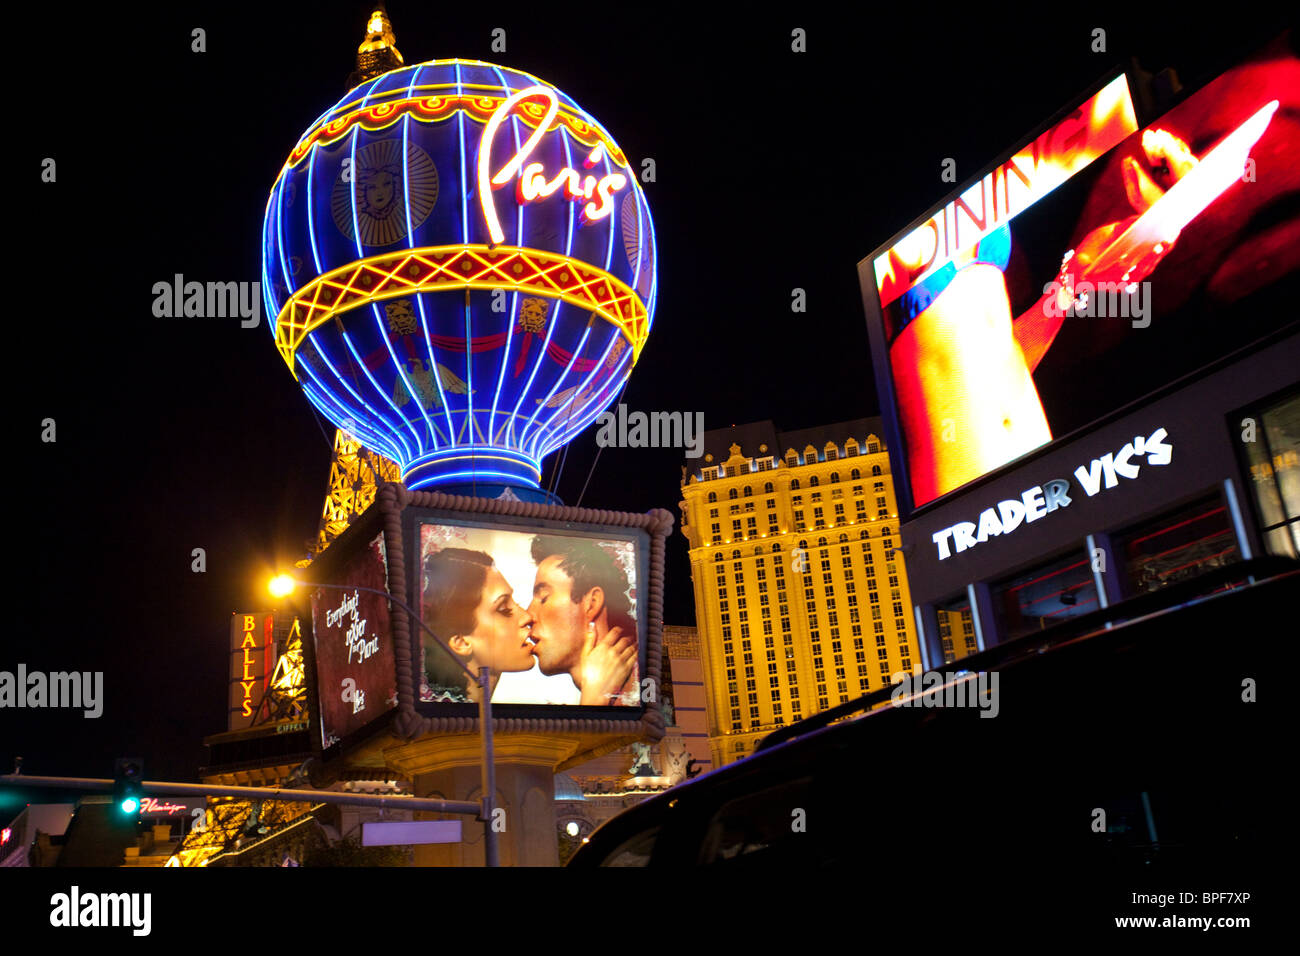 Las Vegas night lights, Las Vegas, Nevada, USA Stock Photo